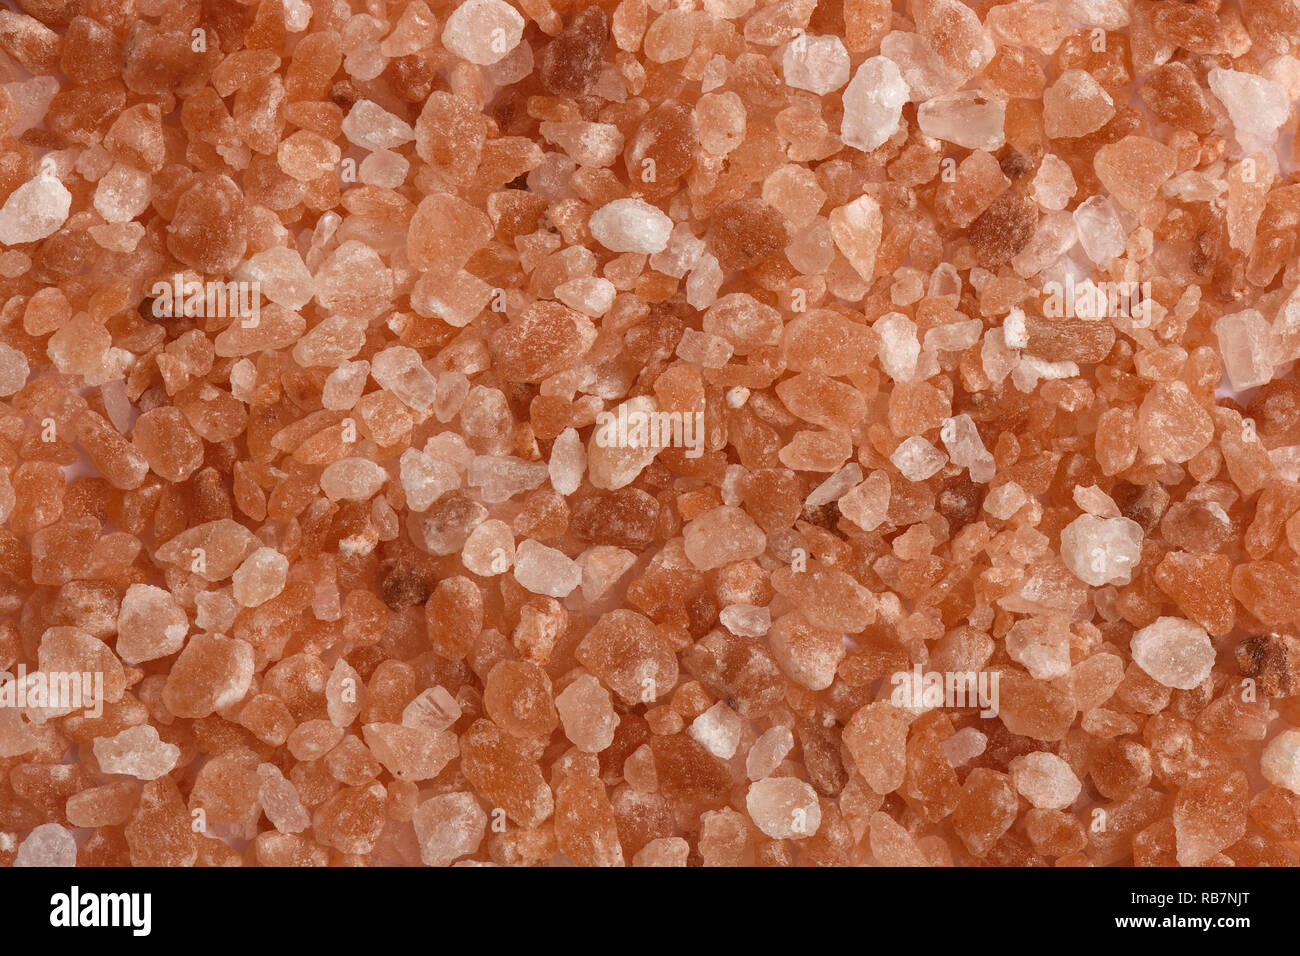 Himalayan pink salt granules Stock Photo